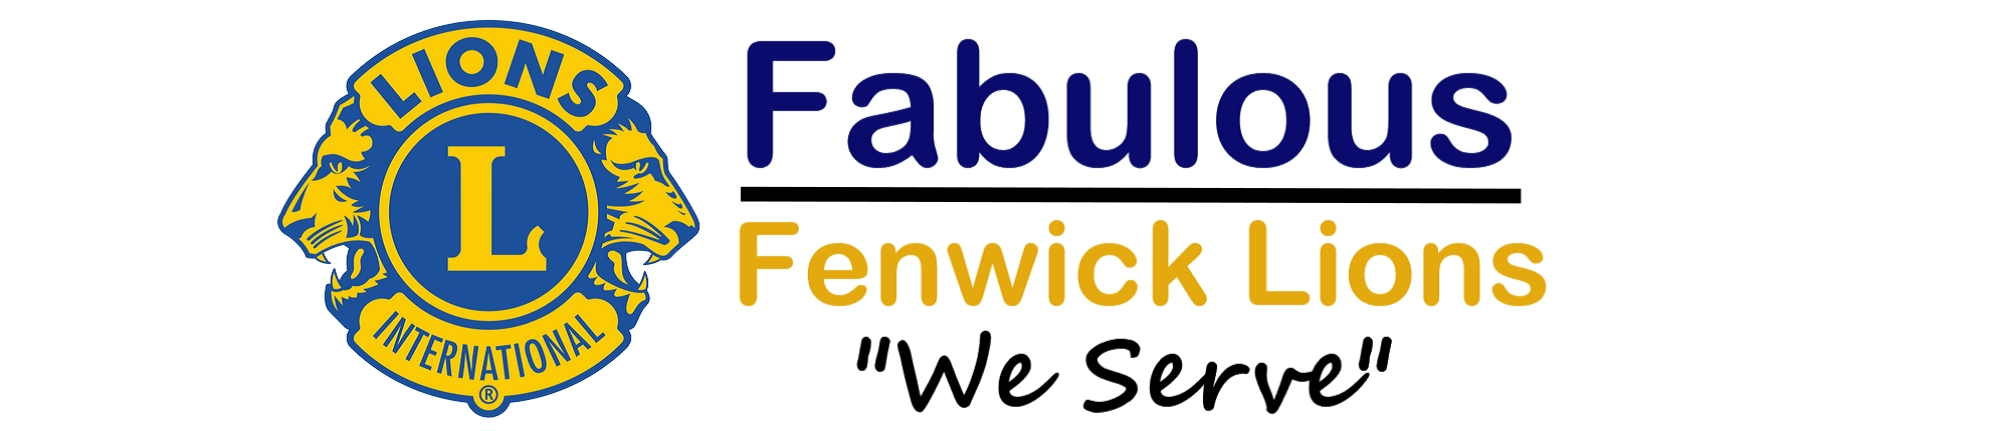 Fabulous Fenwick Lions Sponsor Logo